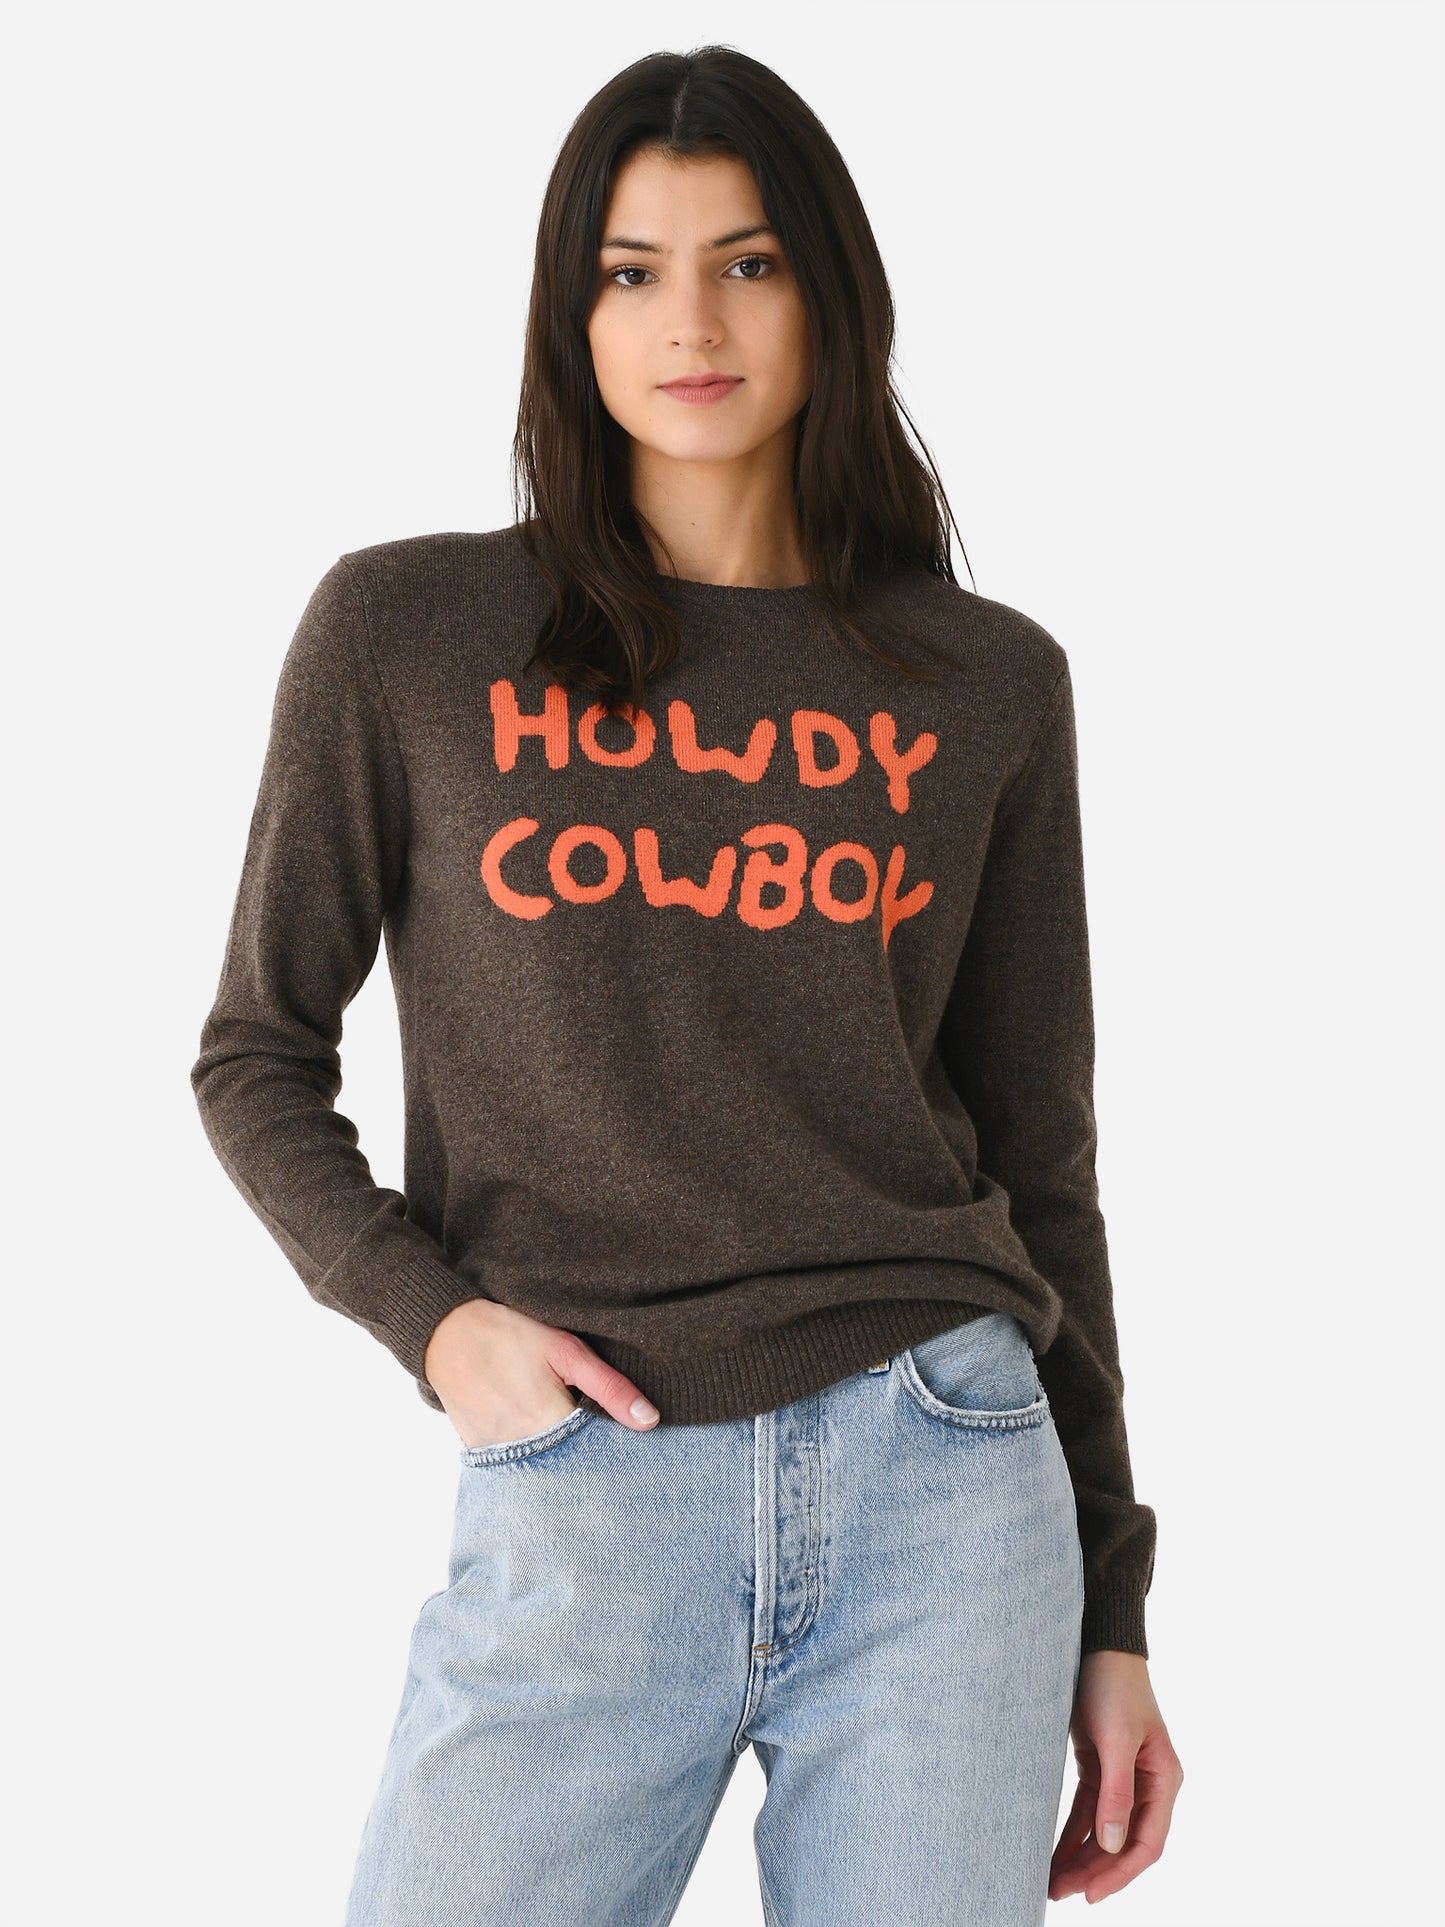 Jumper 1234 Women's Howdy Cowboy Sweater